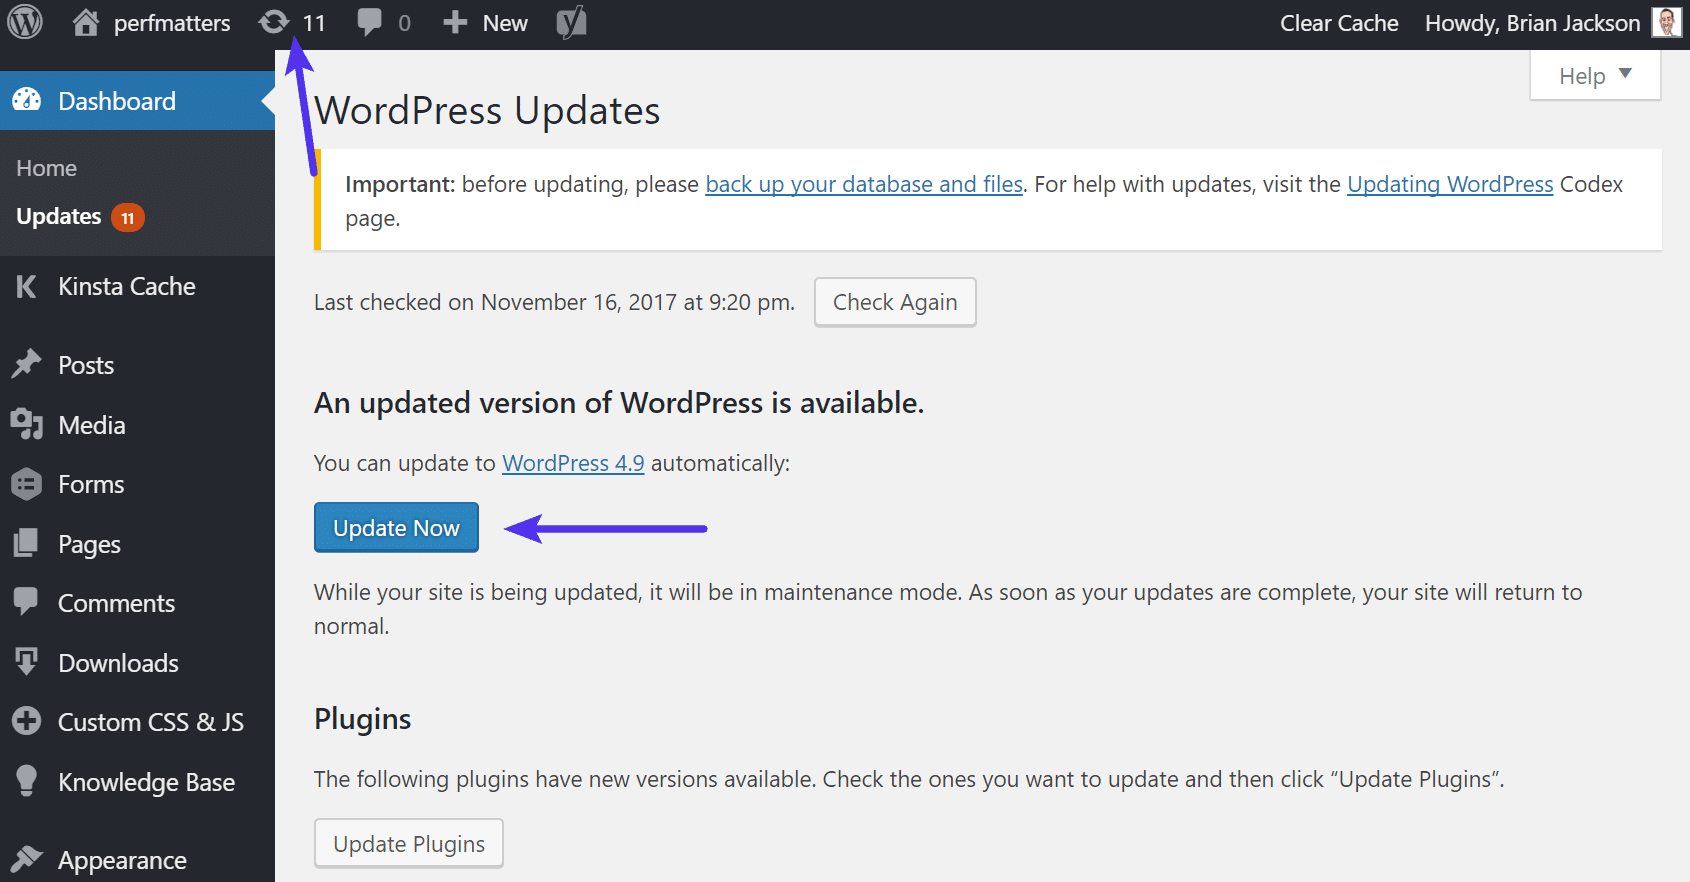 Update to WordPress 5.0